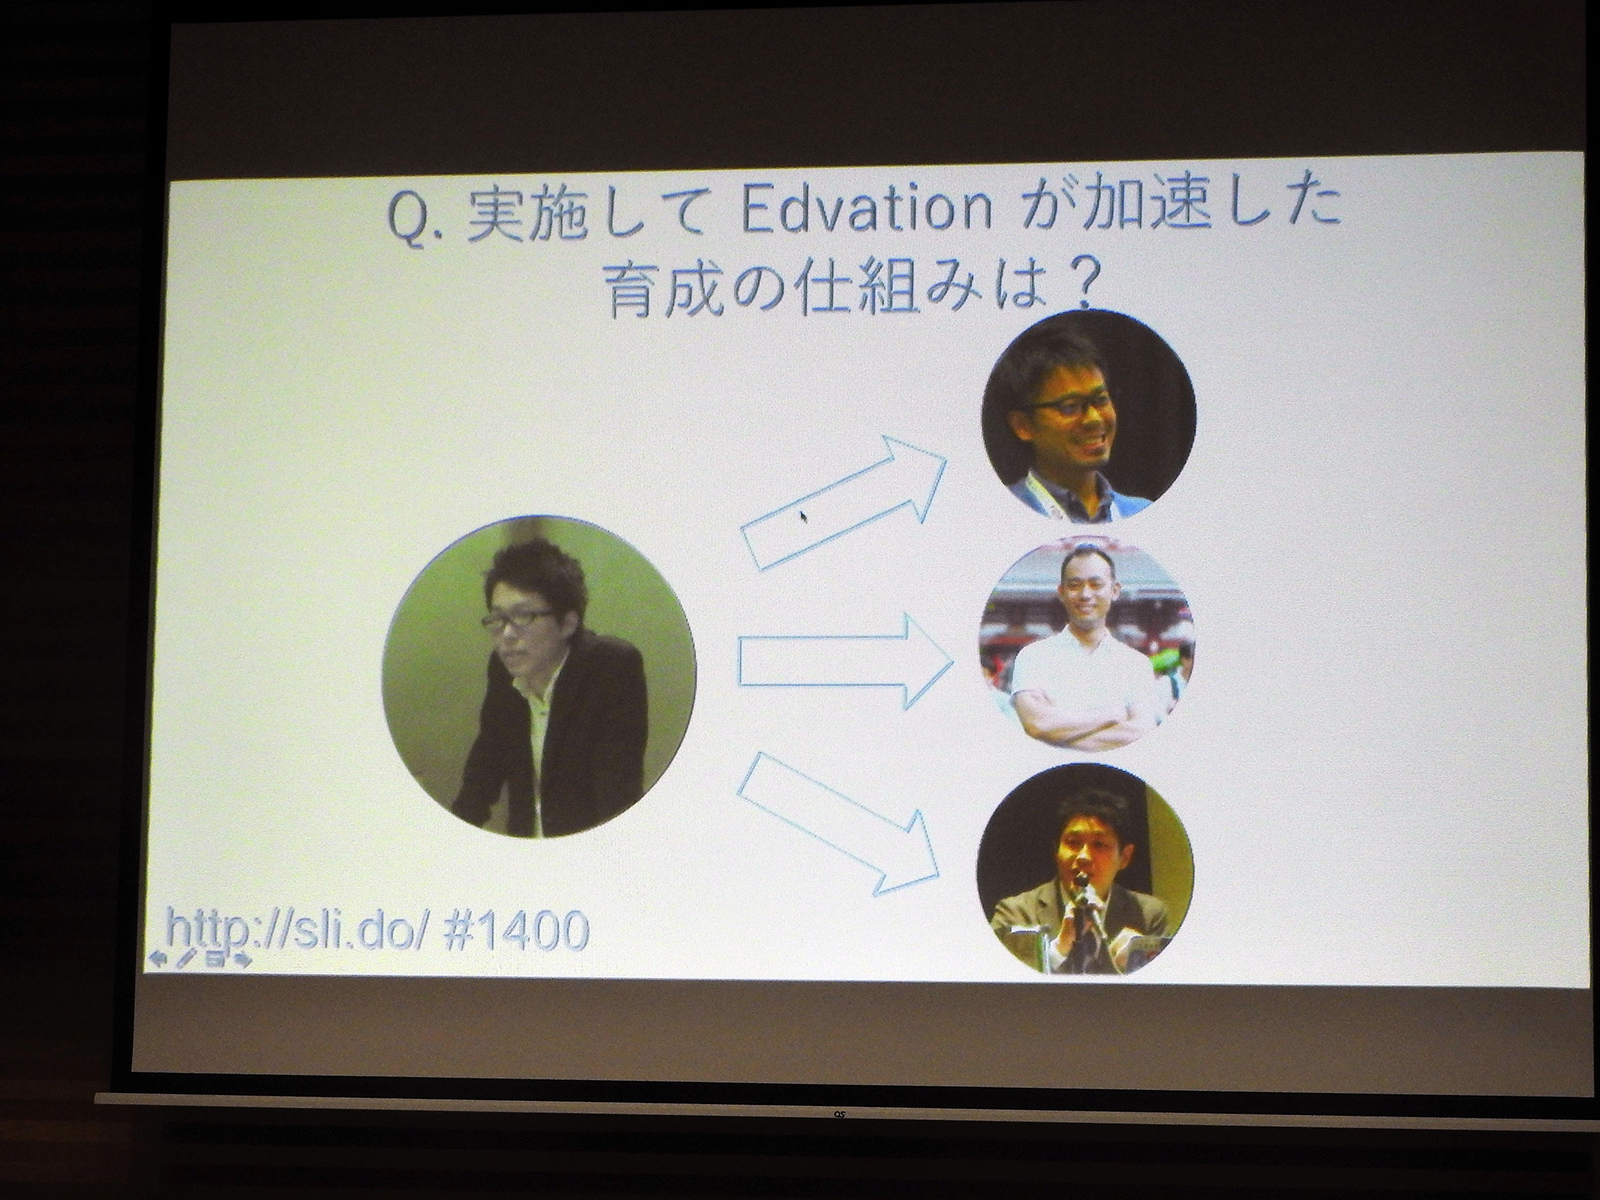 野崎氏の「実施してEdvationが加速した育成の仕組みは？」という質問